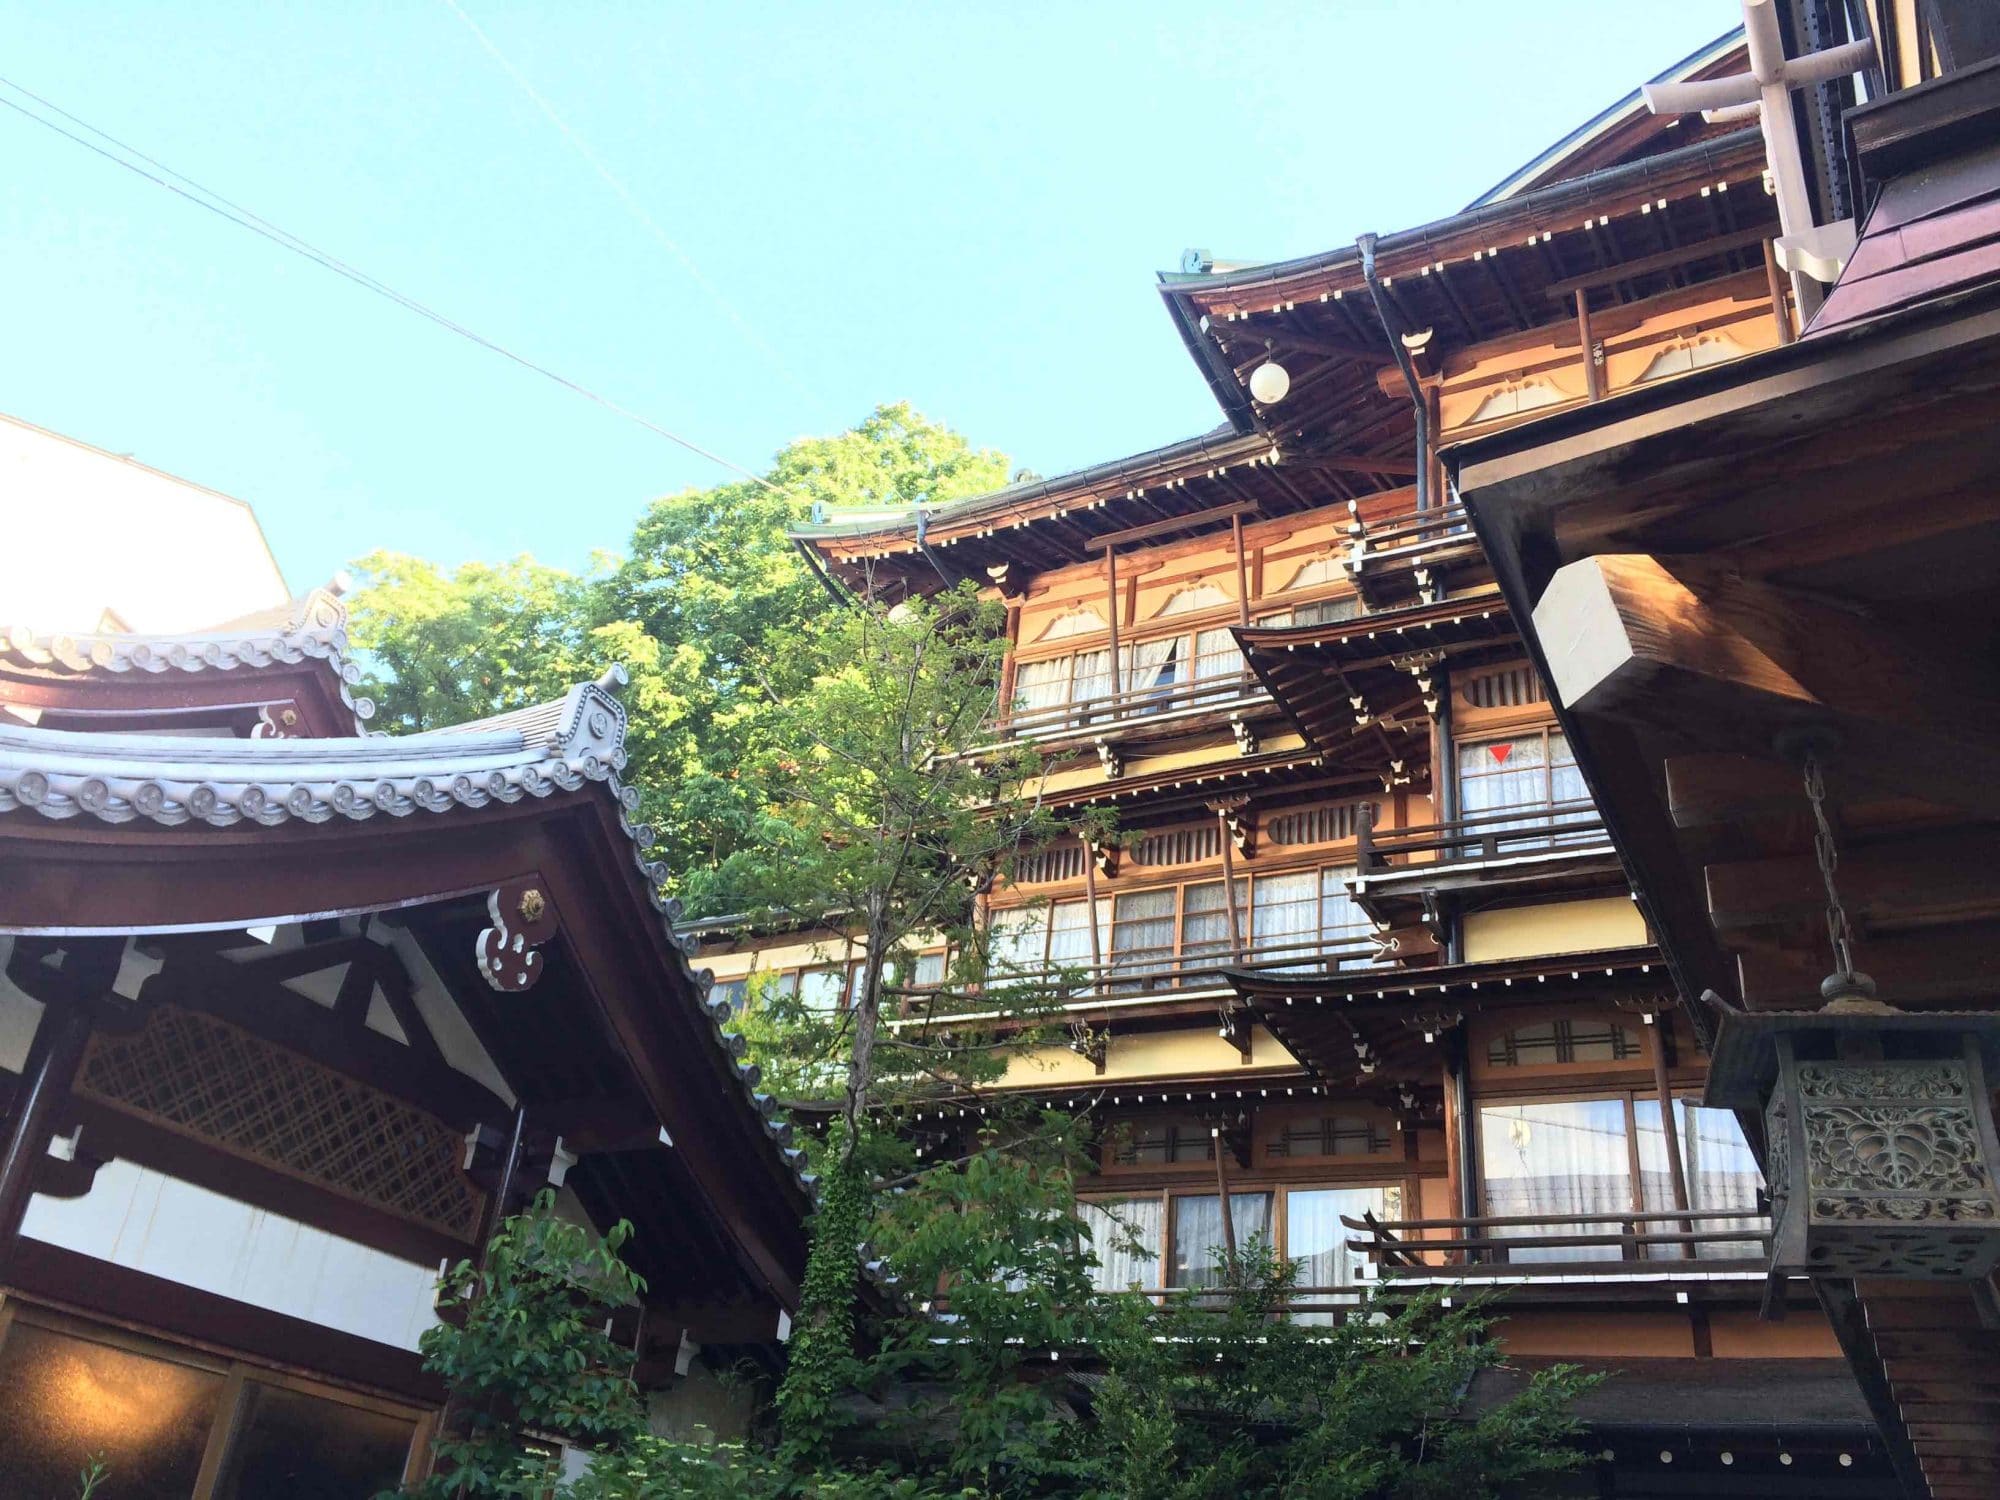 Maisons anciennes Onsen au Japon.